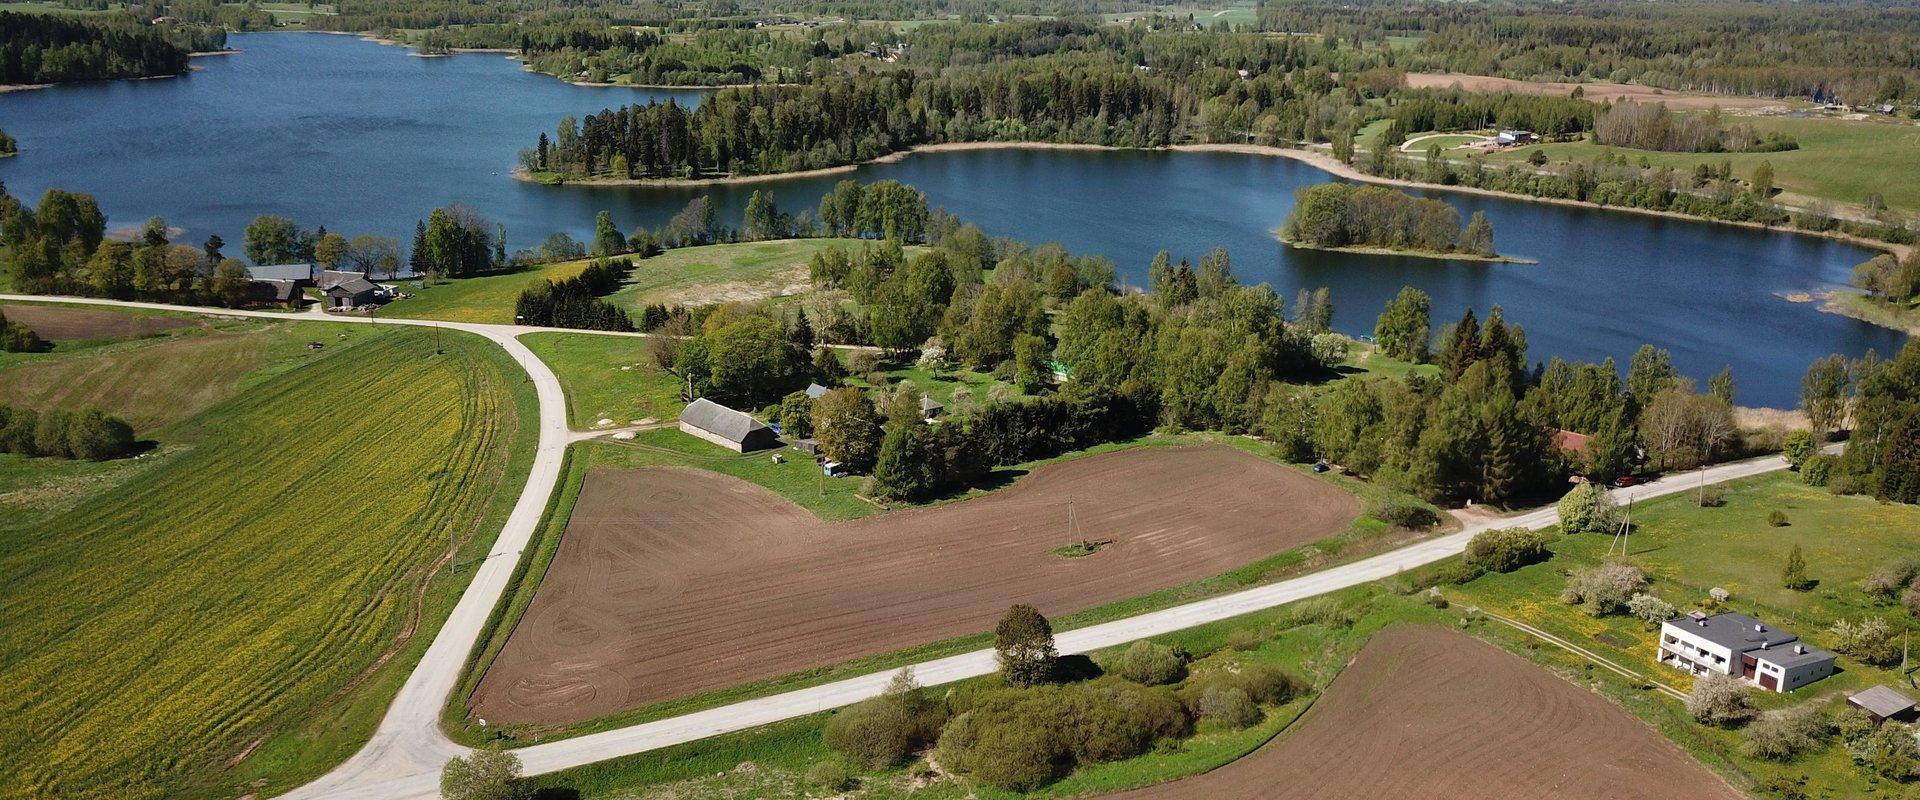 Ape – Eesti/Läti piir (0,0 km) – Lüllemäe (35 km) – Sangaste – Kääriku – Otepää – Elva (108 km) – Kambja – Prangli – Liiva – Tartu (169 km) – Kavastu 